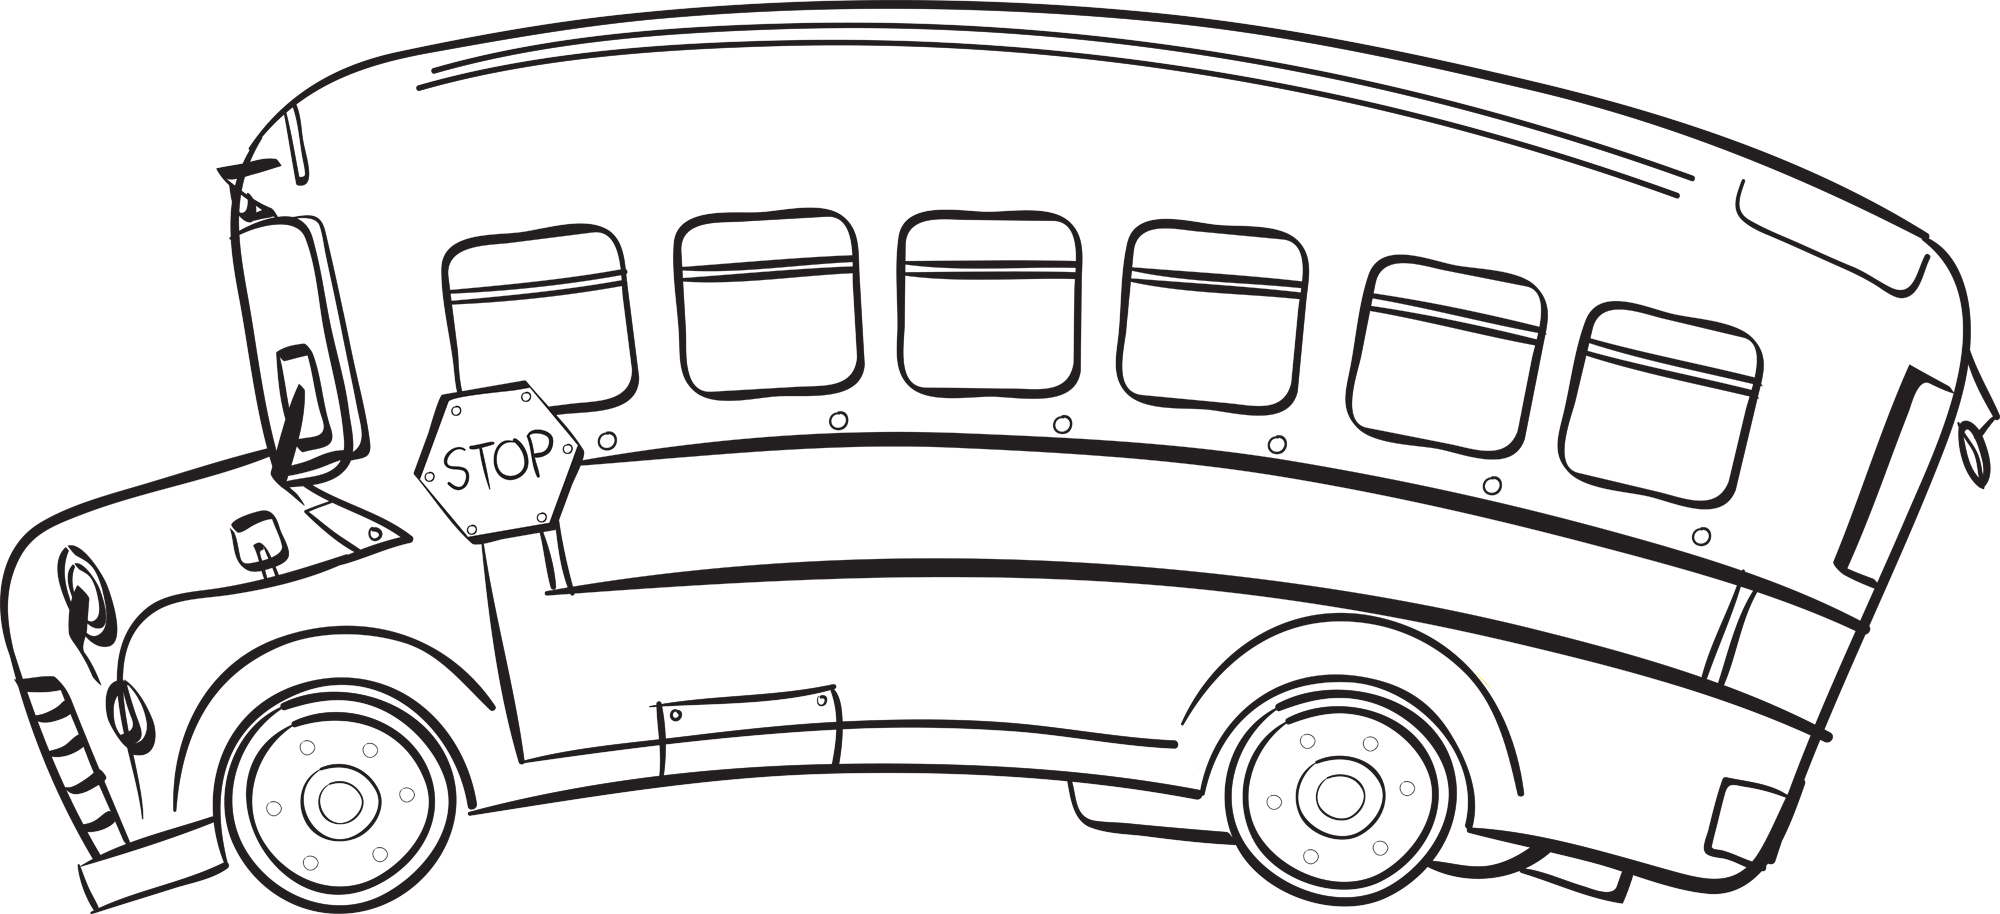 School bus bus.